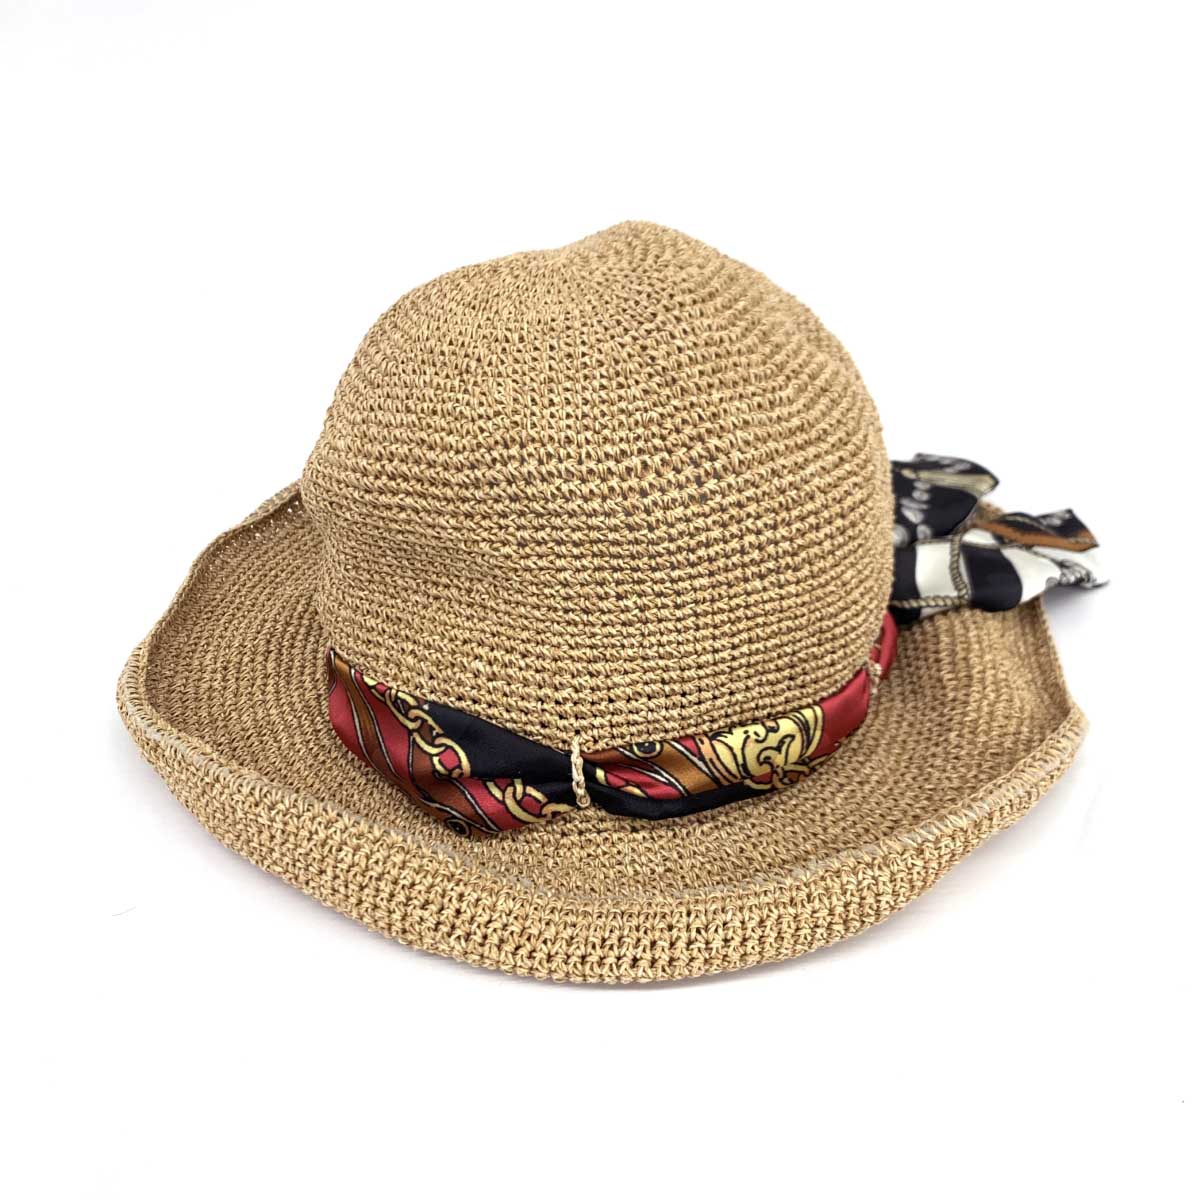 CA4LA カシラ ハット 良好 ベージュ ペーパー100% レディース 指定外繊維 日本製 hat 服飾小物 